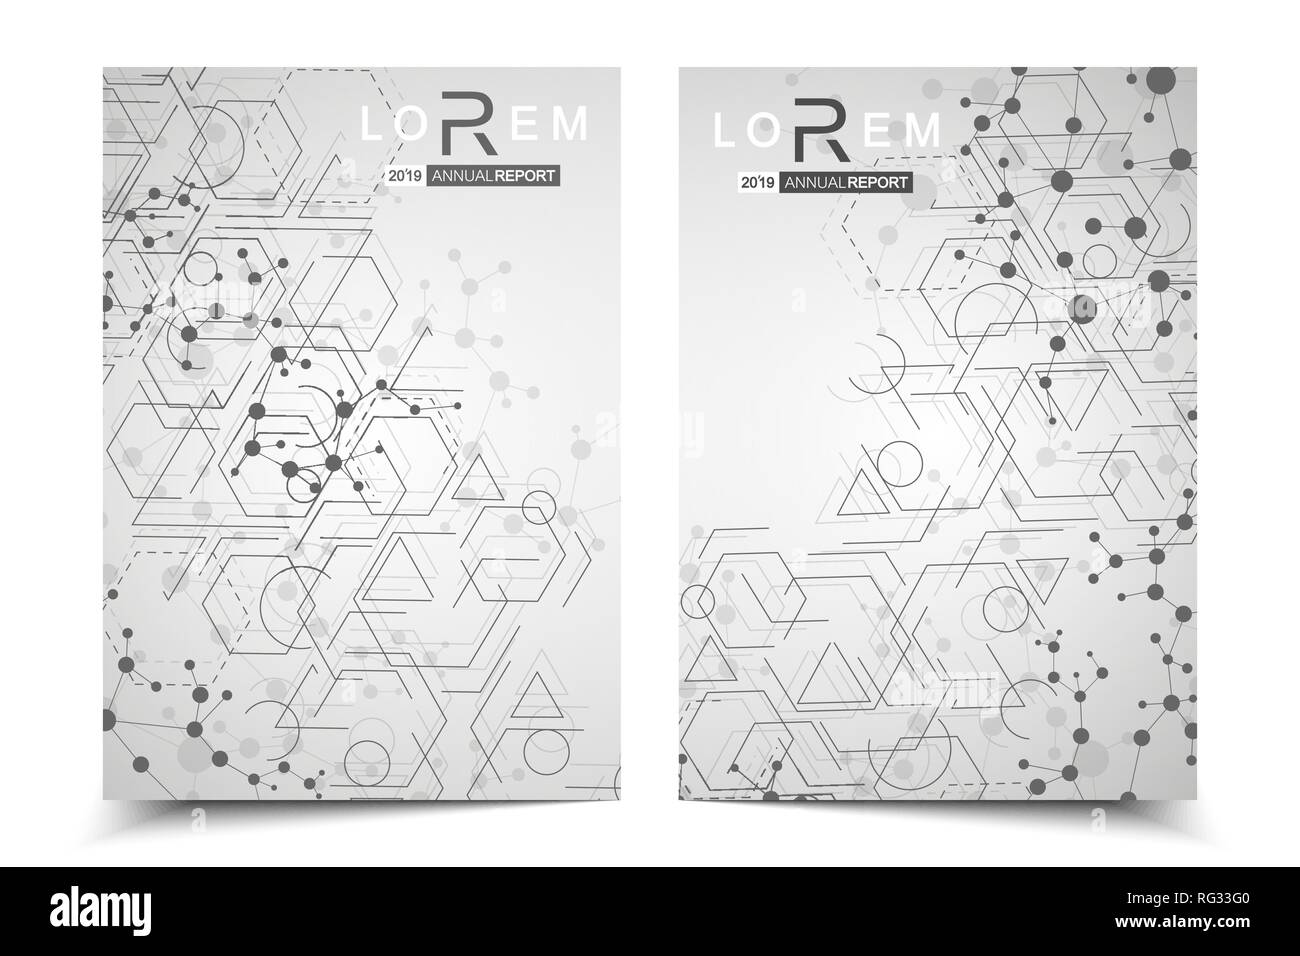 Wissenschaftliche Broschüre Design-Vorlage. Vektor-Flyer-Layout, molekulare Struktur mit verbundener Linien und Punkten. Wissenschaftliche Muster Atom DNA mit Elementen Stock Vektor